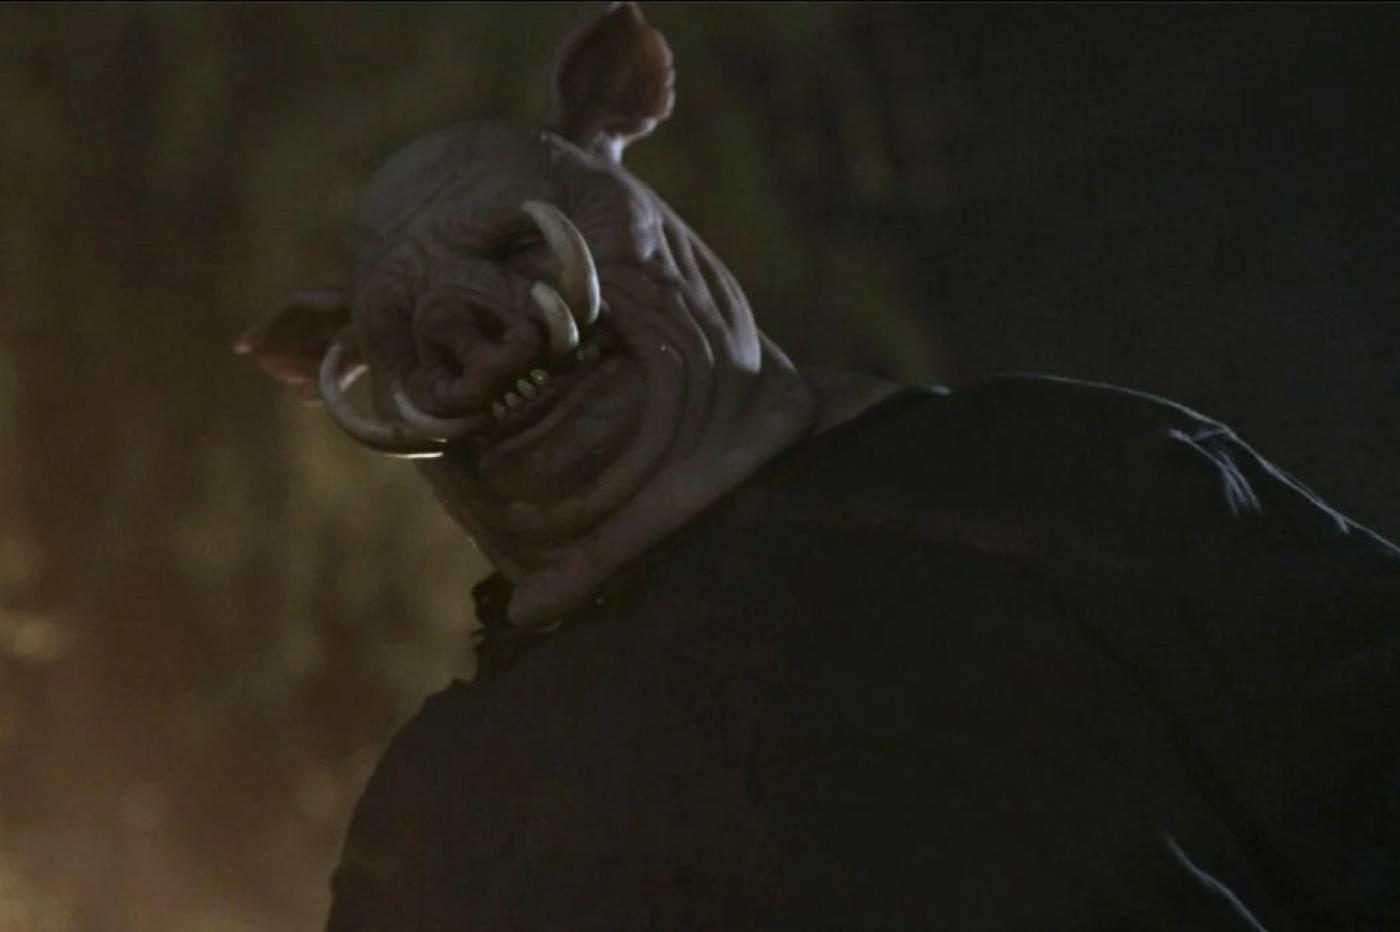 Image du film montrant un Porcinet terrifiant en contre plongée